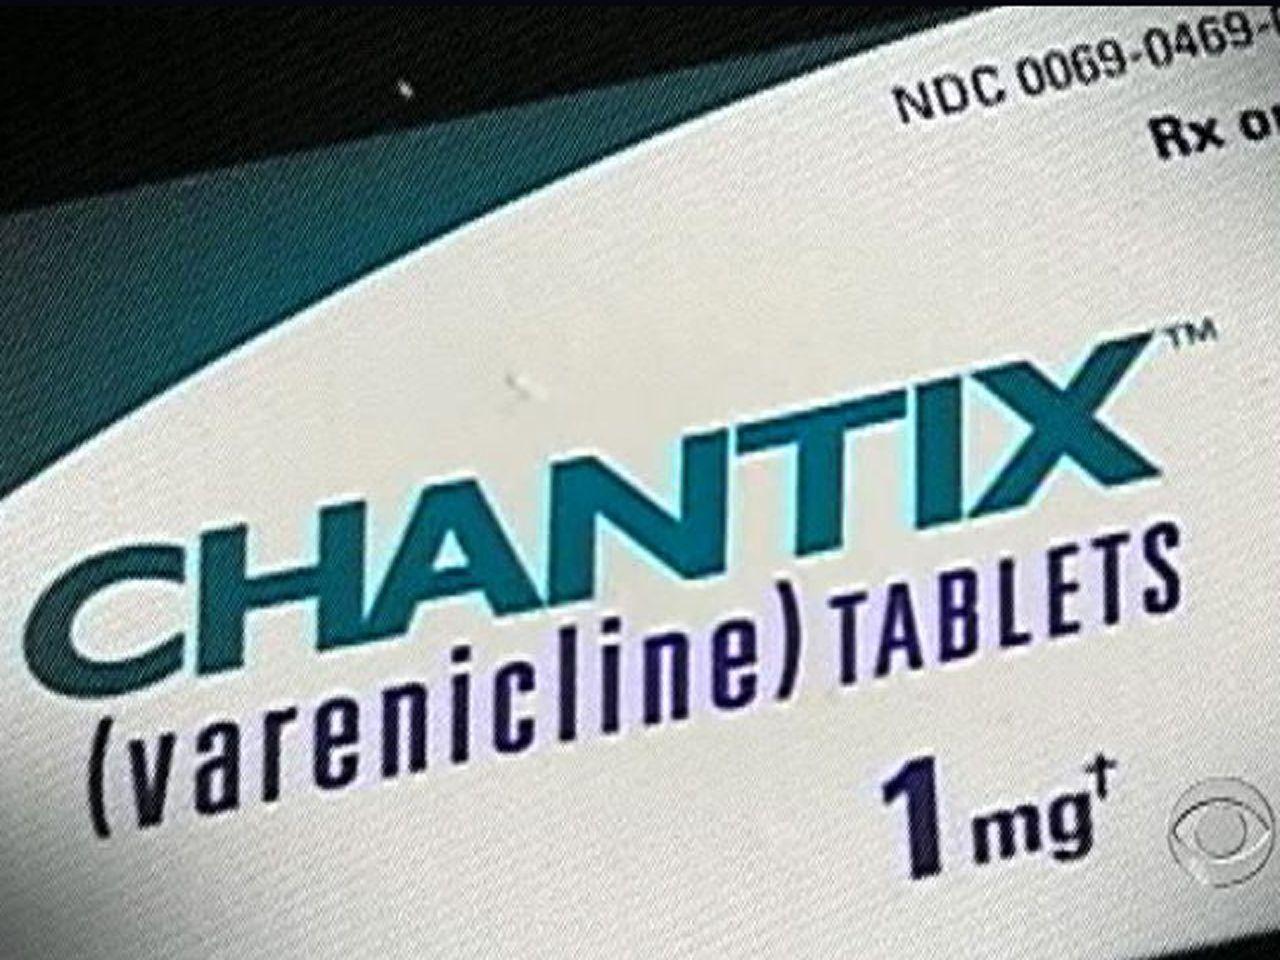 Chantix Logo - New FDA Warning For Anti Smoking Drug Chantix (varenicline)